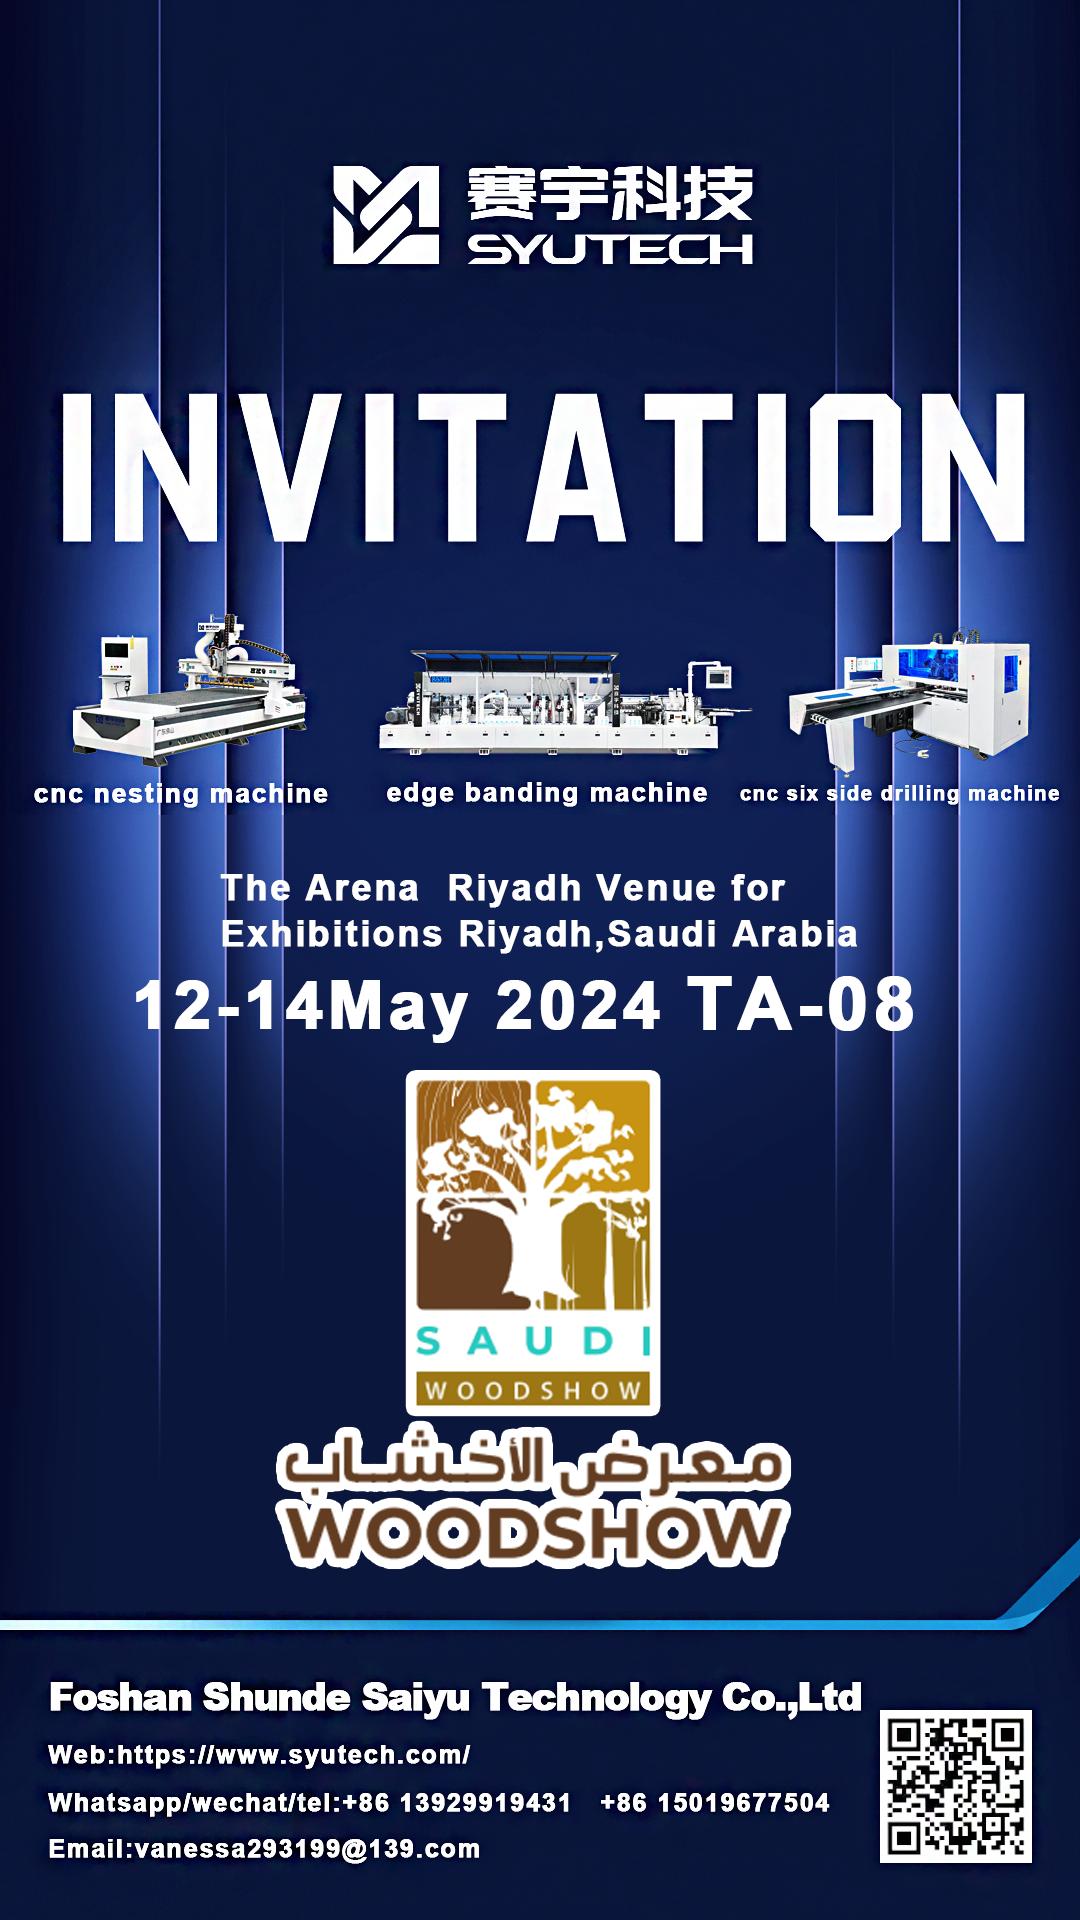 SAUDI WOODSHOW 2024 Saudi Arabien International Woodworking Show, Wëllkomm op eisem Stand！